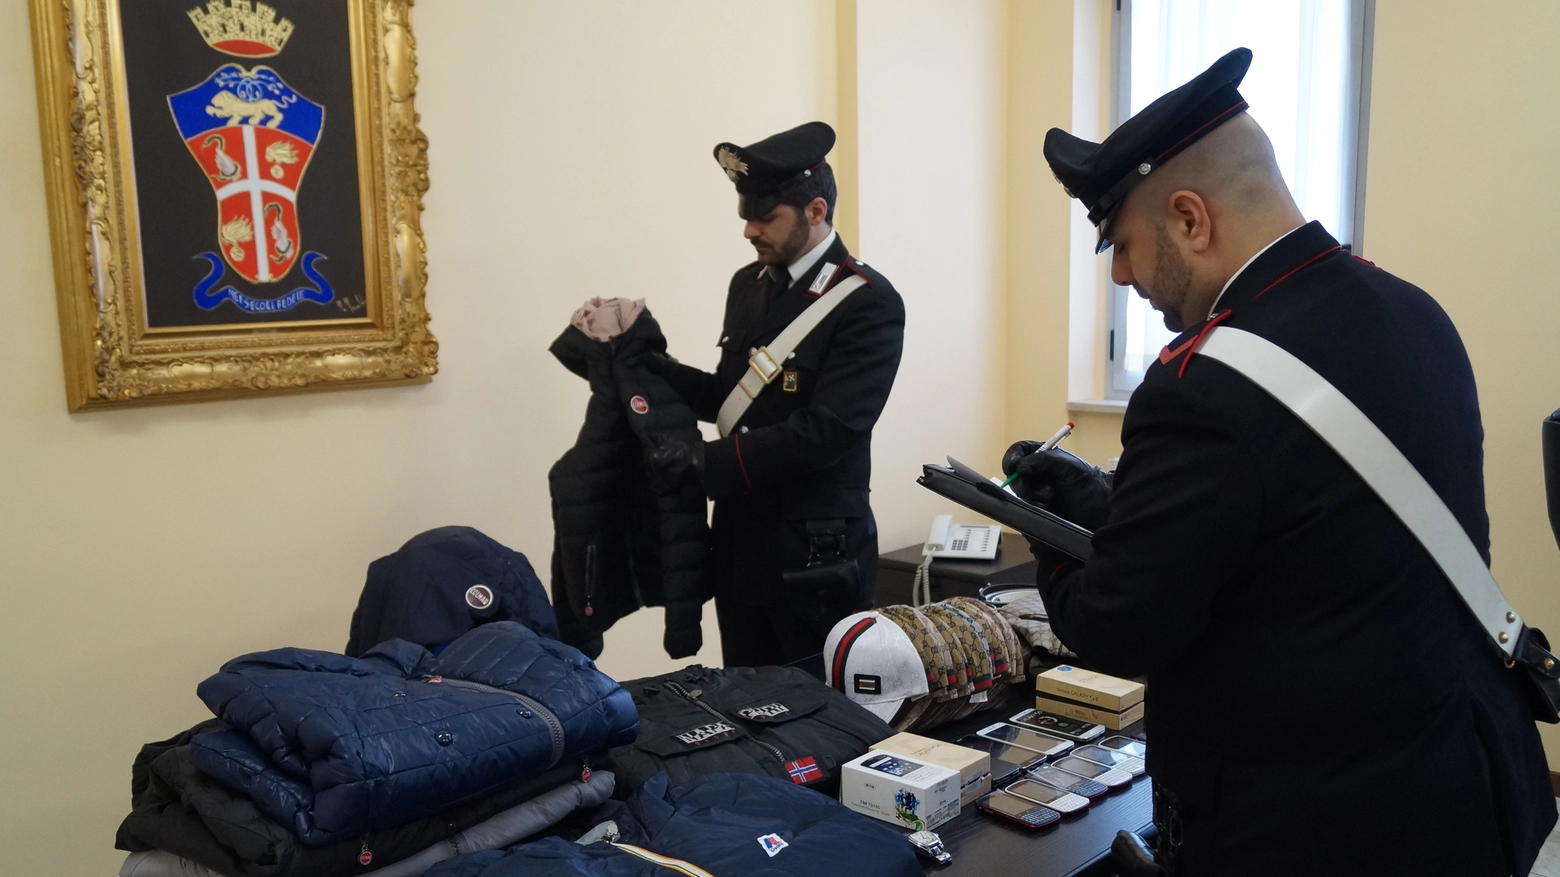 La merce trovata dai carabinieri a Paderno d'Adda